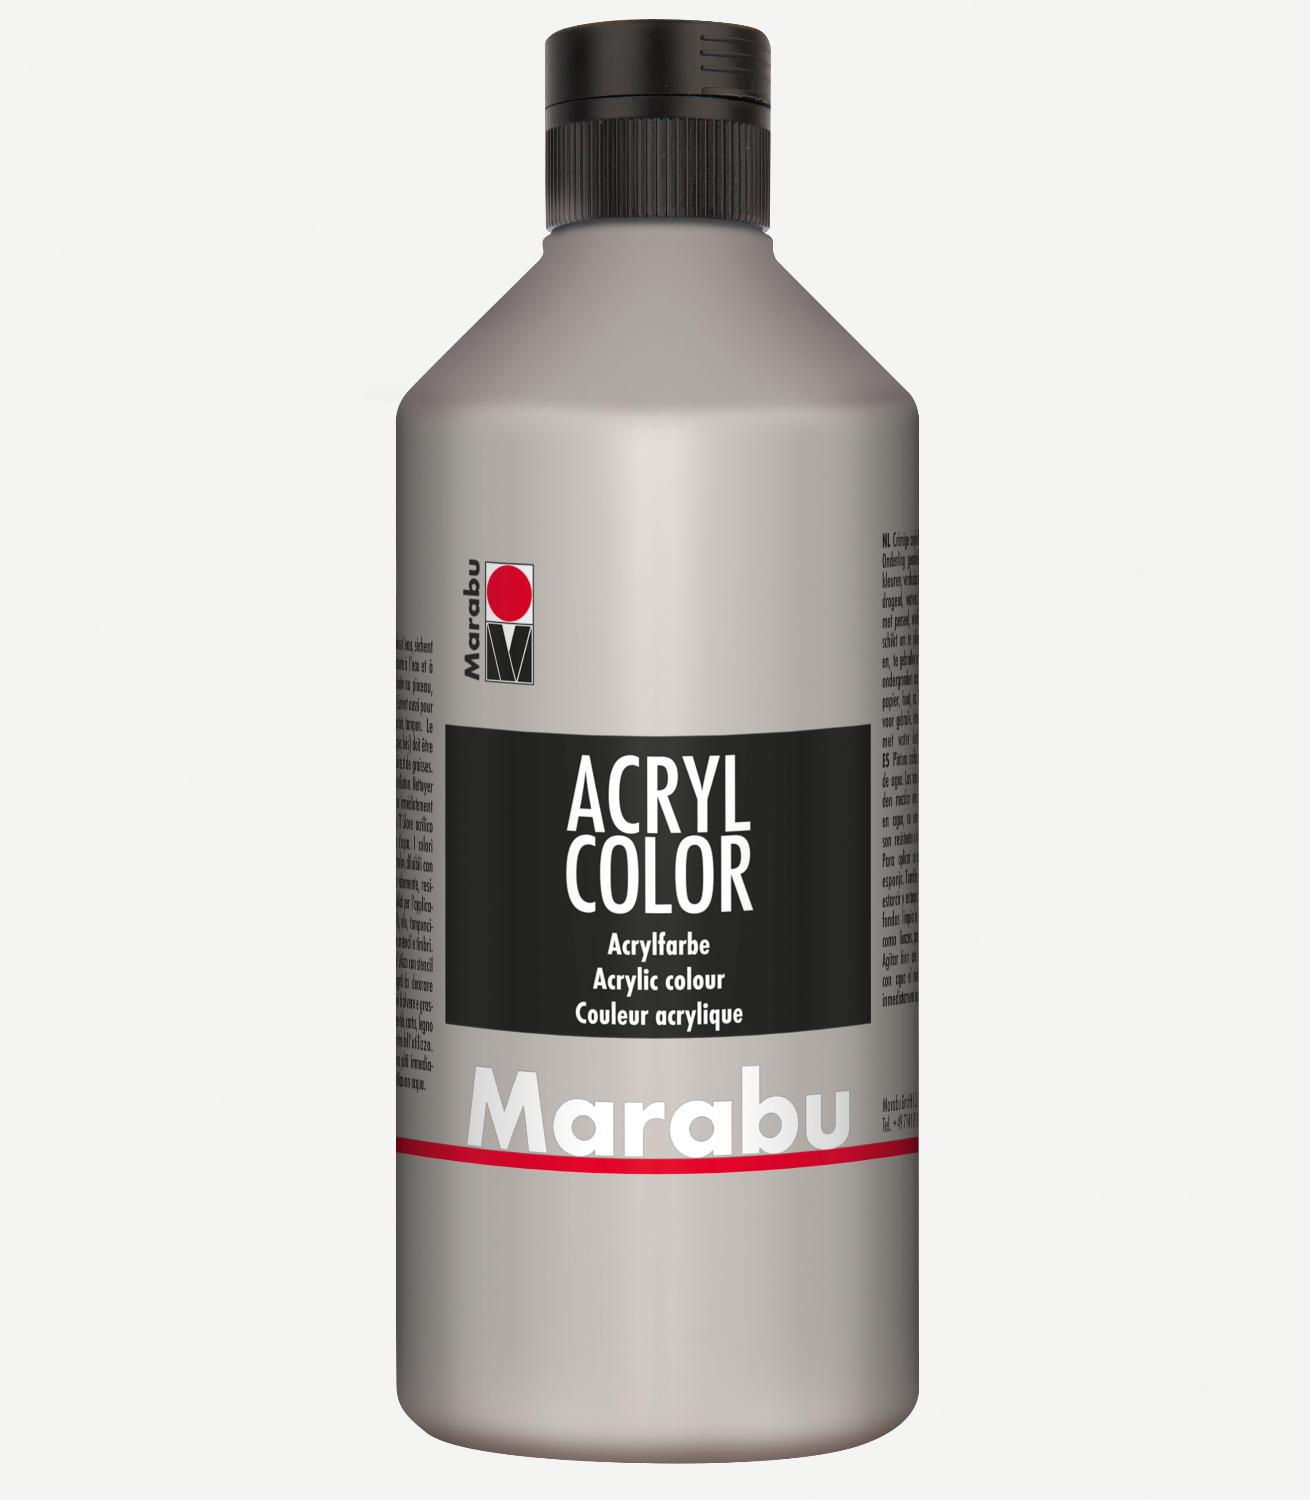 Marabu Acrylfarbe Acryl Color, 500 ml, silber 082